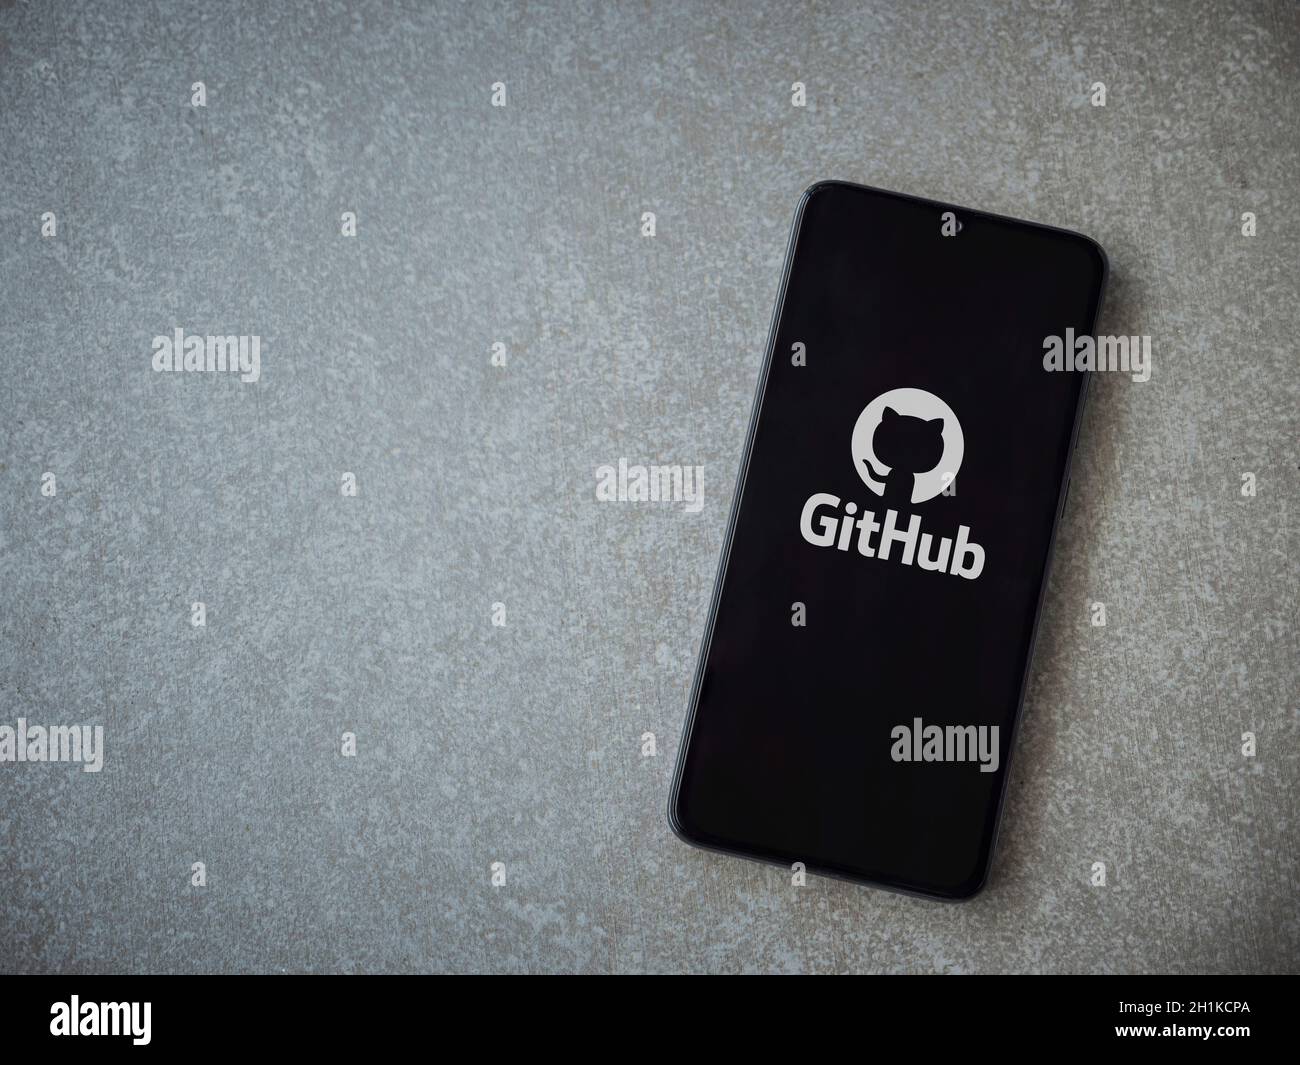 LOD, Israel - 8. Juli 2020: GitHub App Launch Screen mit Logo auf dem Display eines schwarzen Smartphone auf Keramik Stein Hintergrund. Draufsicht flach Stockfoto